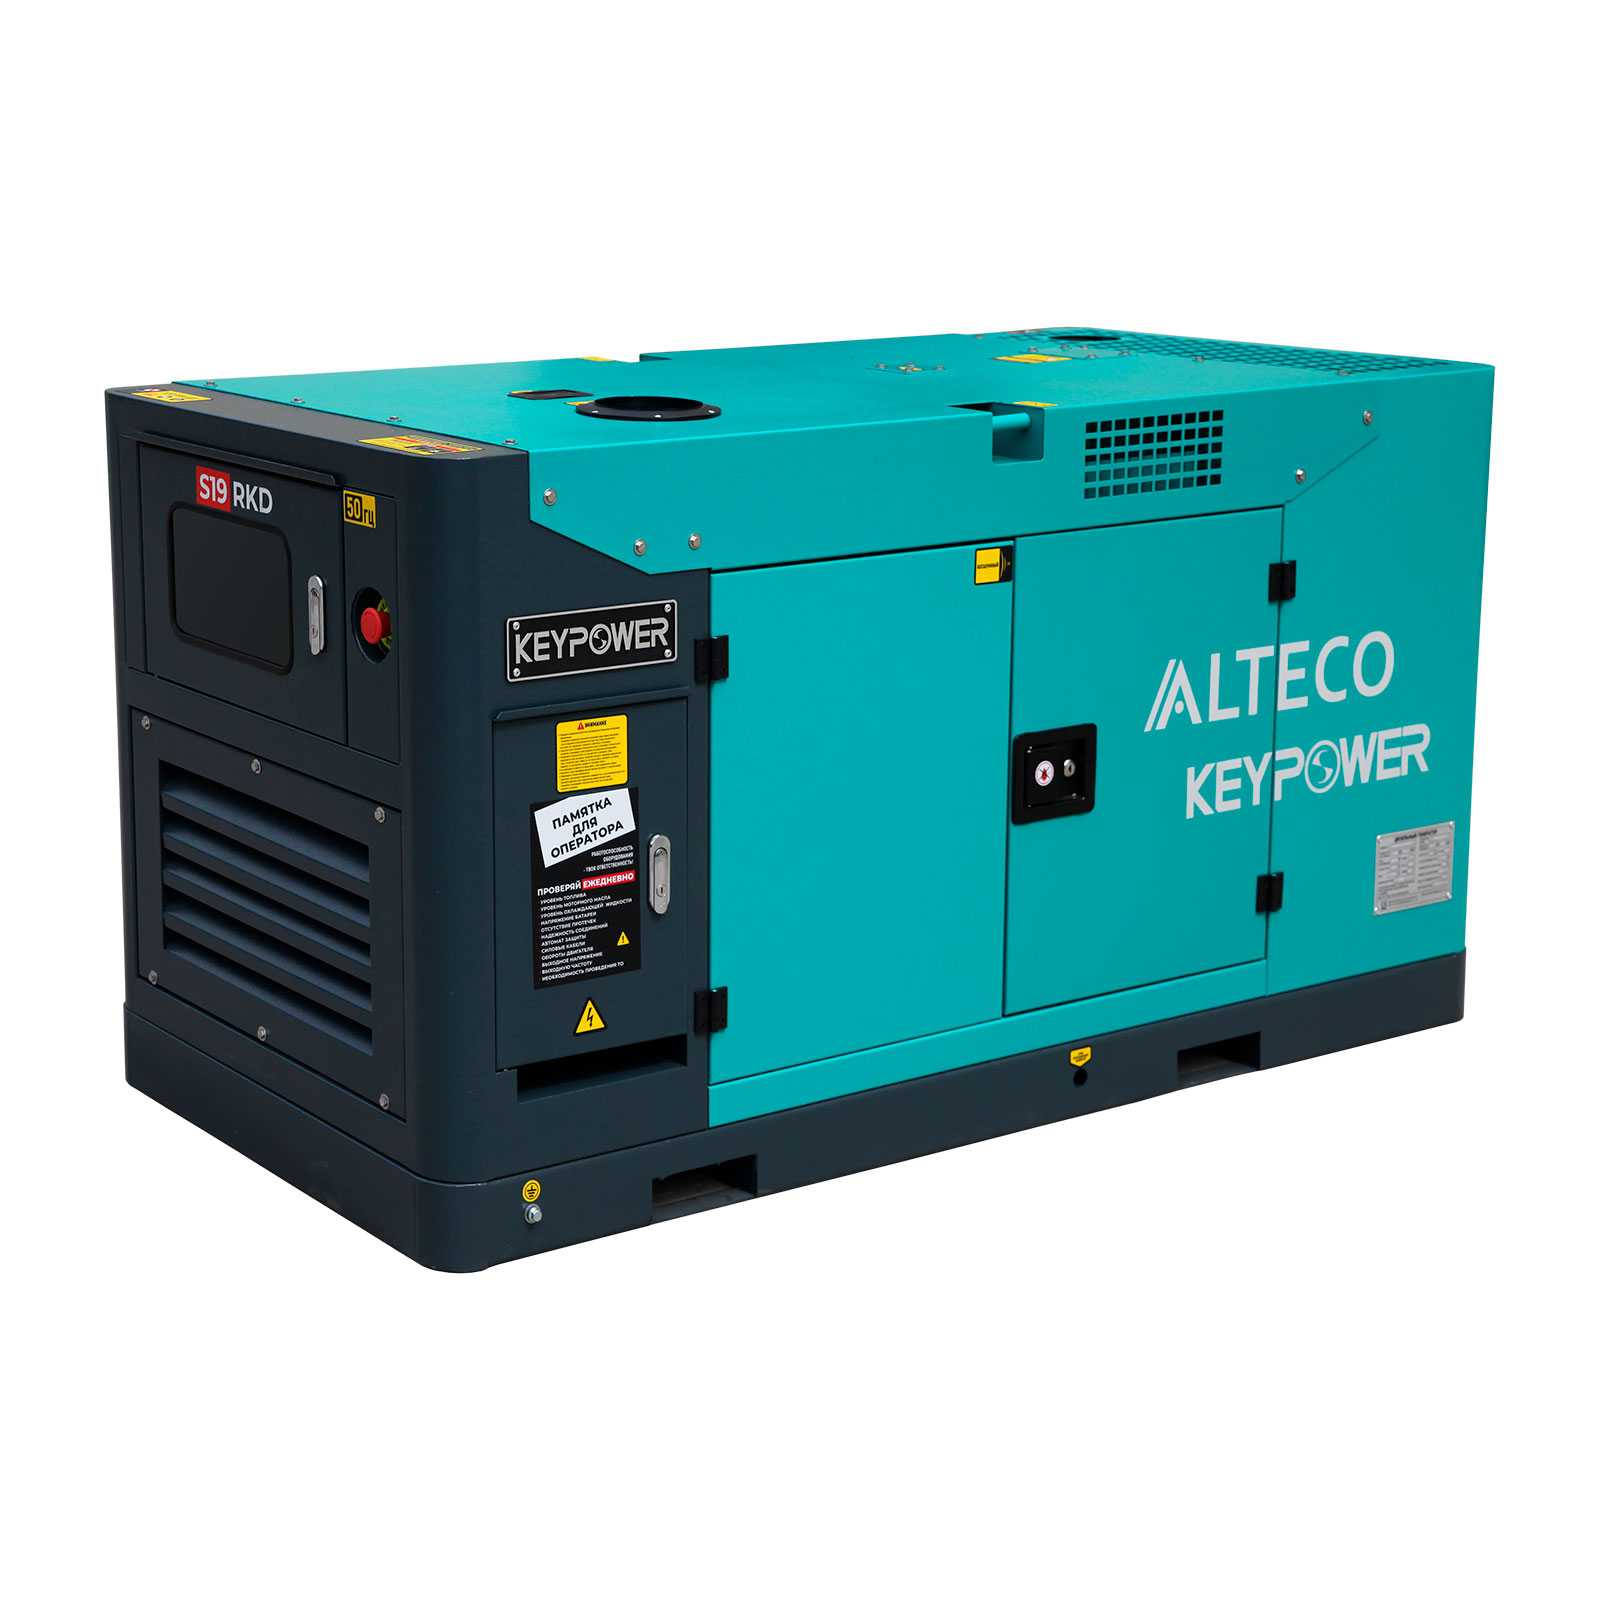 Дизельный генератор ALTECO S19 RKD